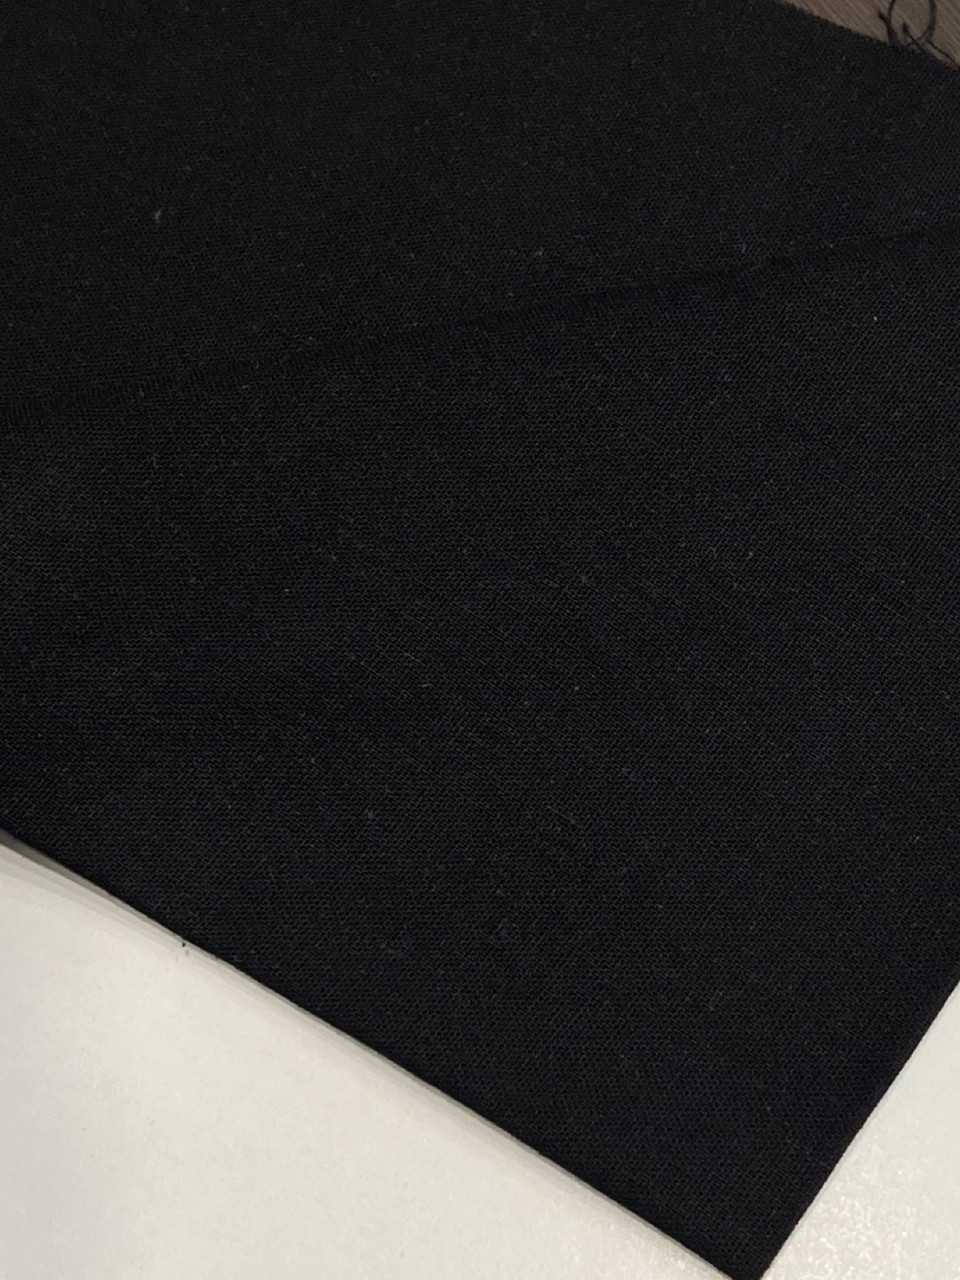 Тканина Льон-віскоза черний 100%віскоза (без хім волокна). Для пошиття одягу та рукоділля. Якість висока!